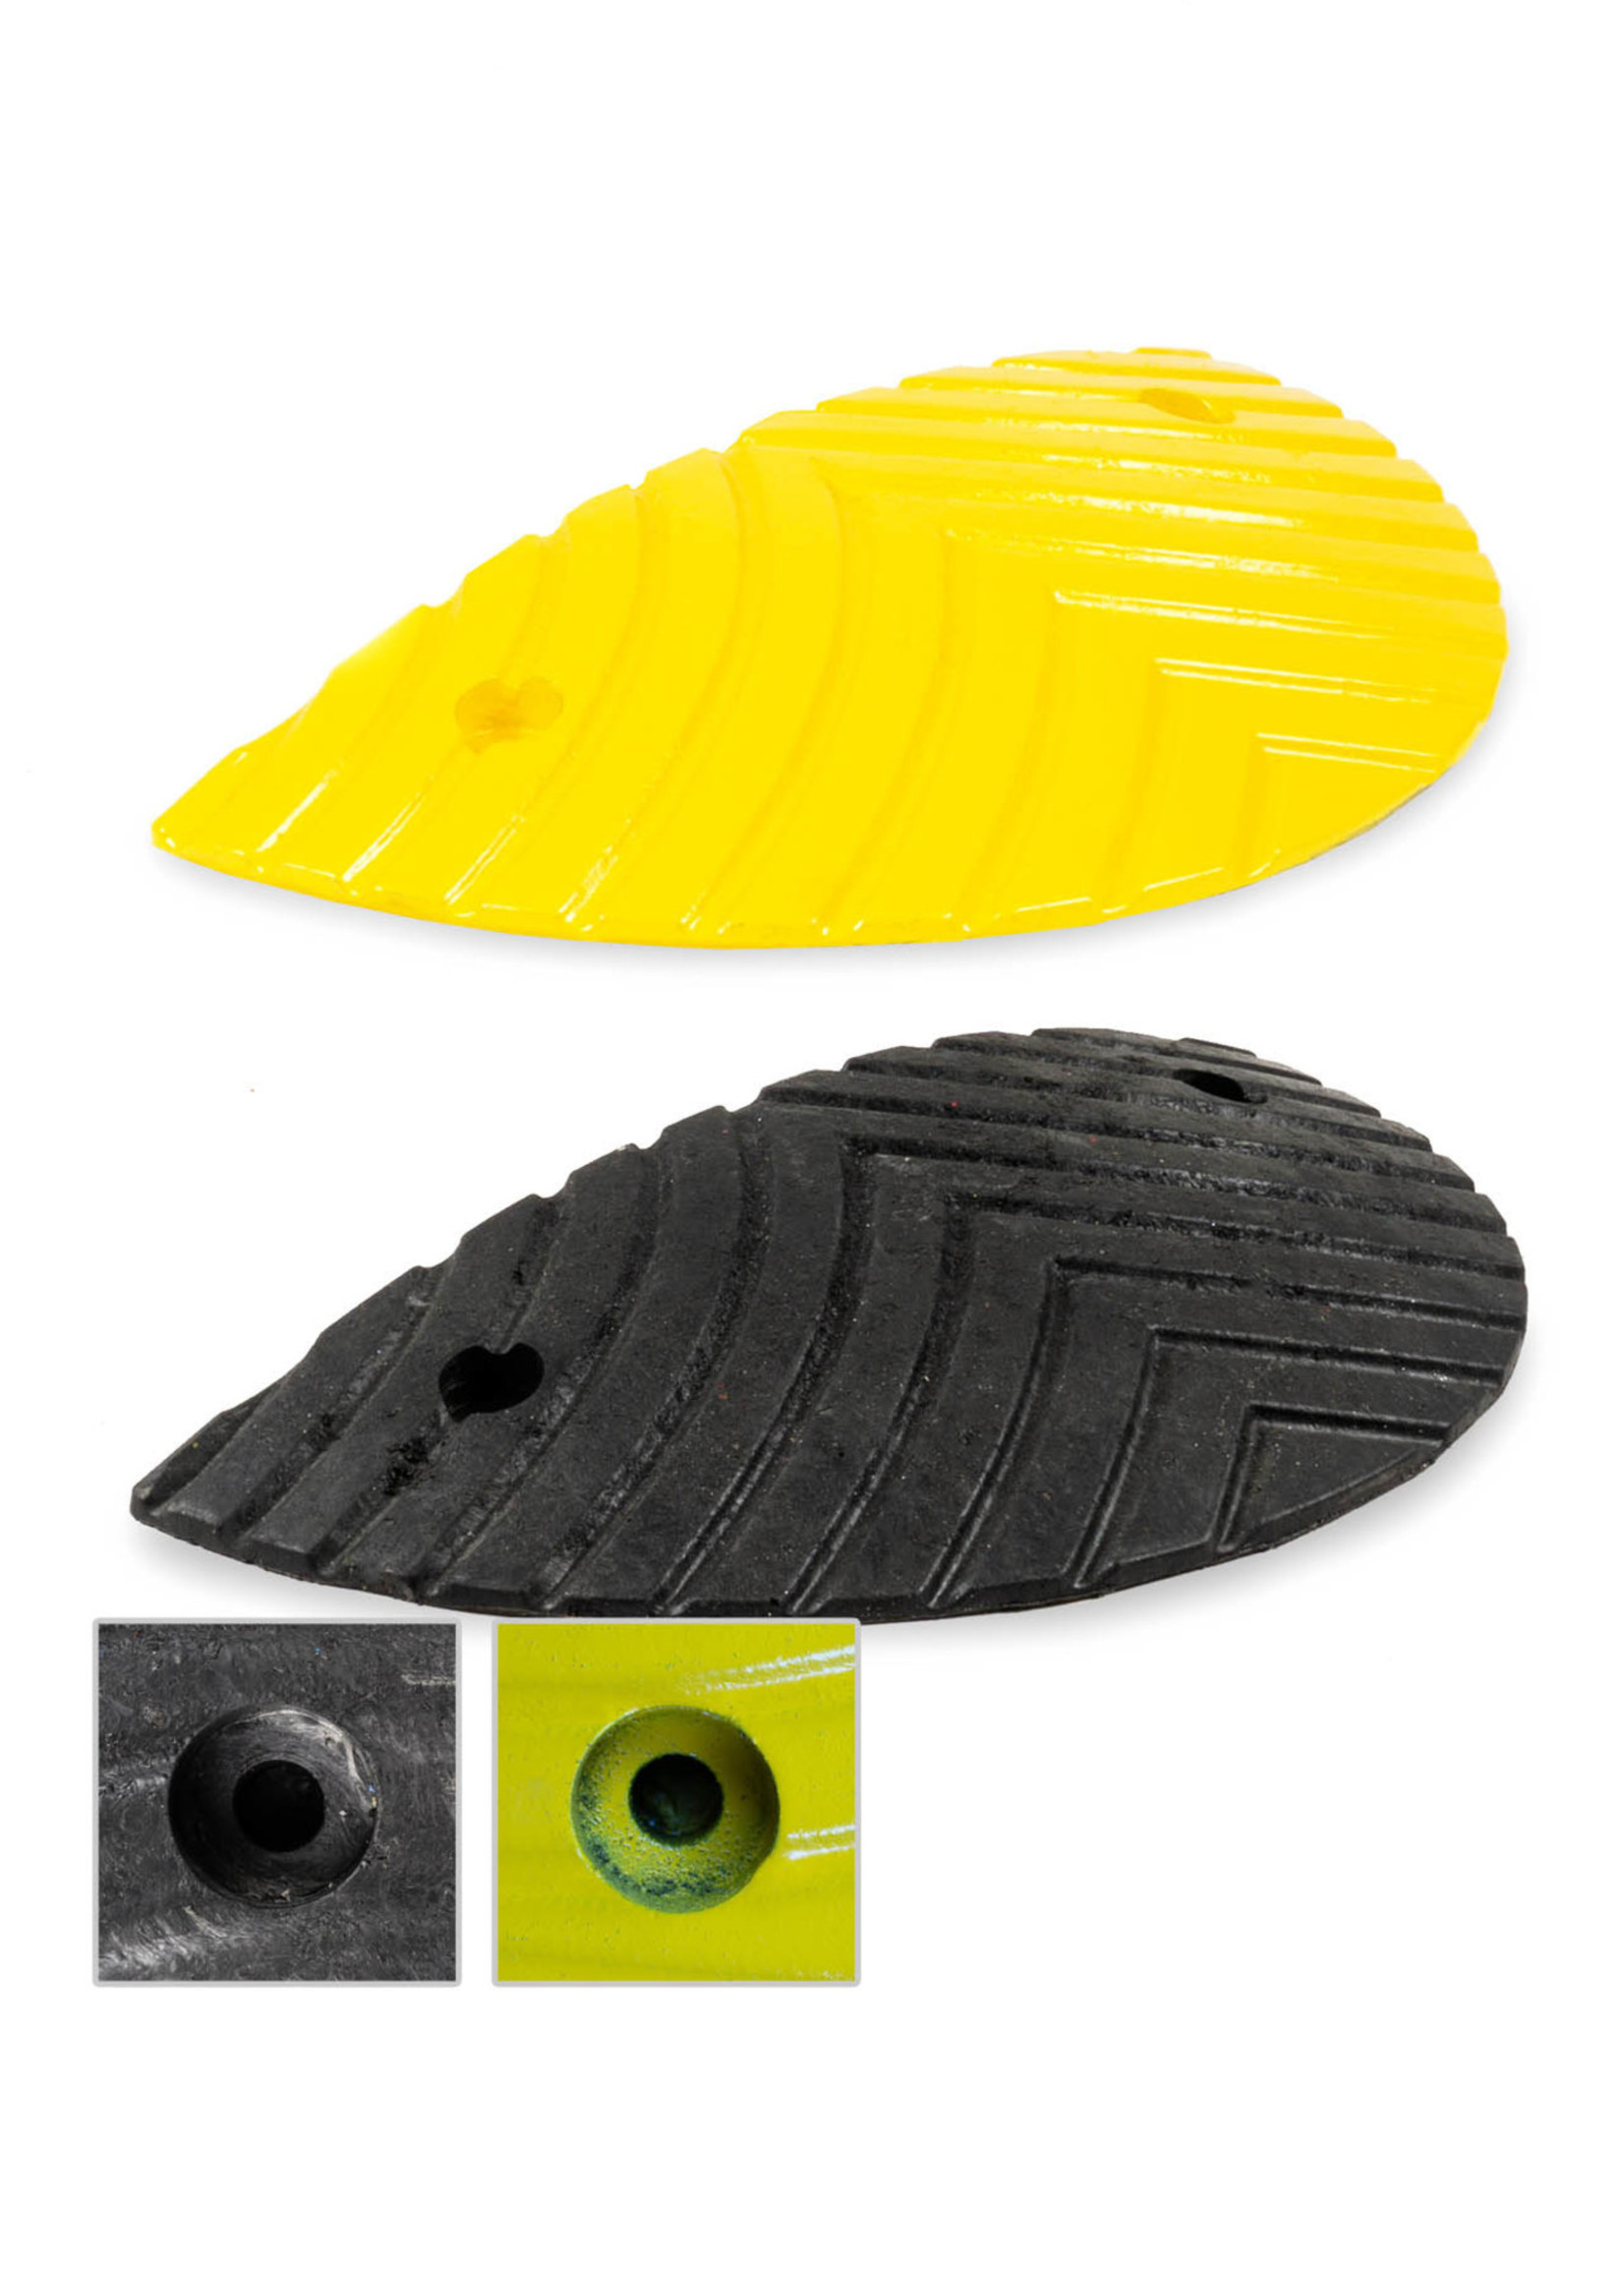 RI-TRAFFIC Winkel-/End-Eelement für Bremschwelle 5cm hoch, seitlich halbrund, schwarz-gelb, robustes Kunststoff